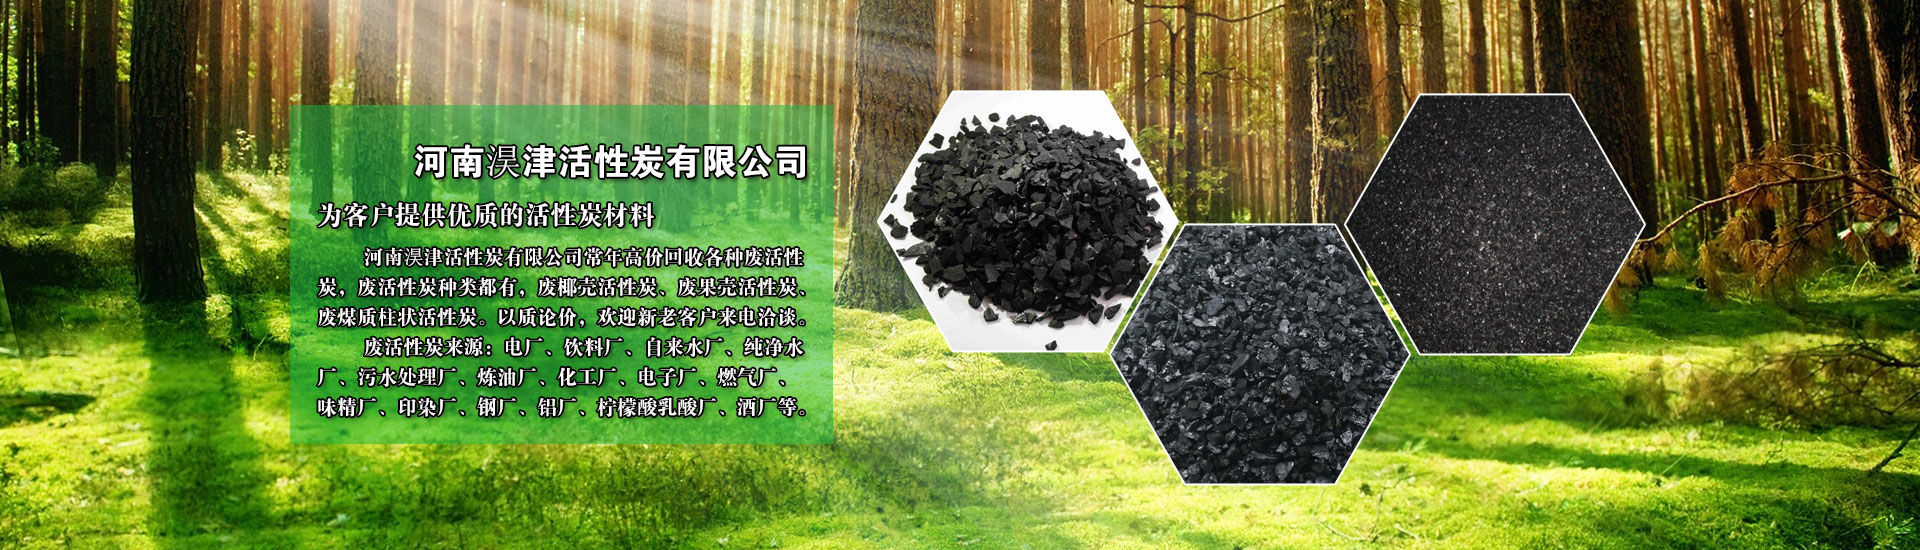 河南淏津活性炭有限公司